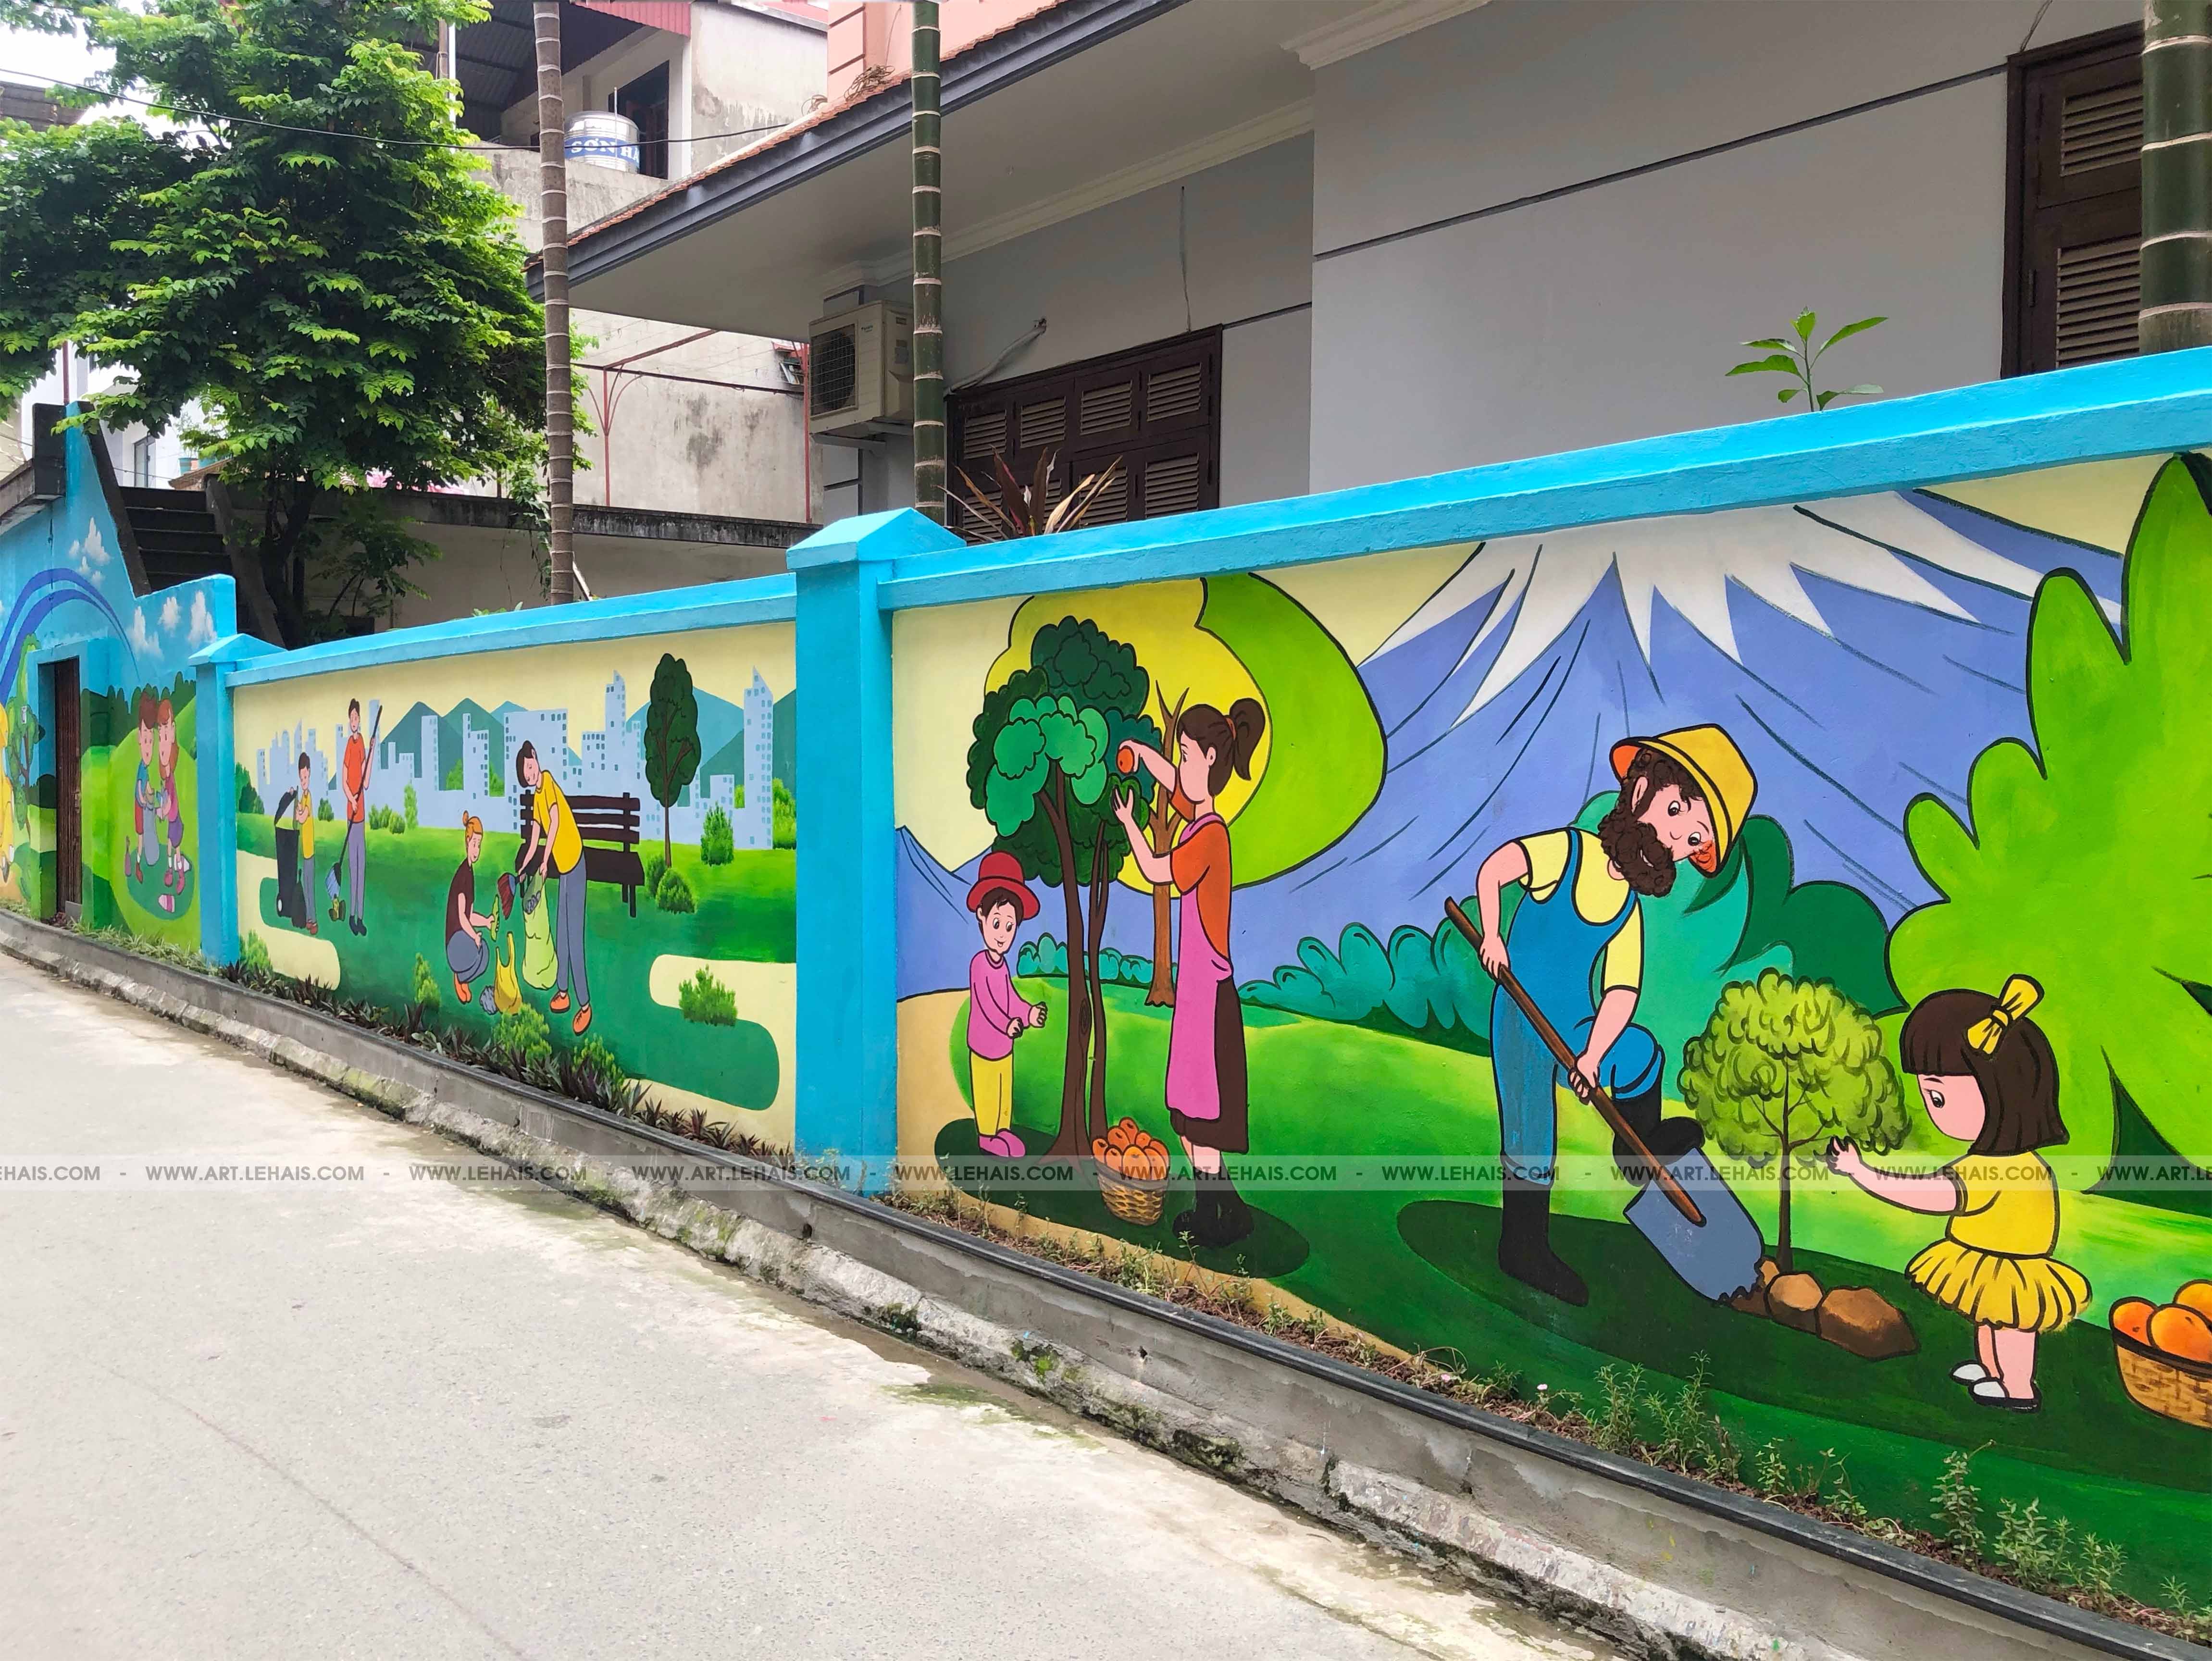 Vẽ tranh tường đường phố với nội dung tuyên truyền bảo vệ môi trường tại Ngô Gia Tự, Long Biên, Hà Nội - TT190LHAR